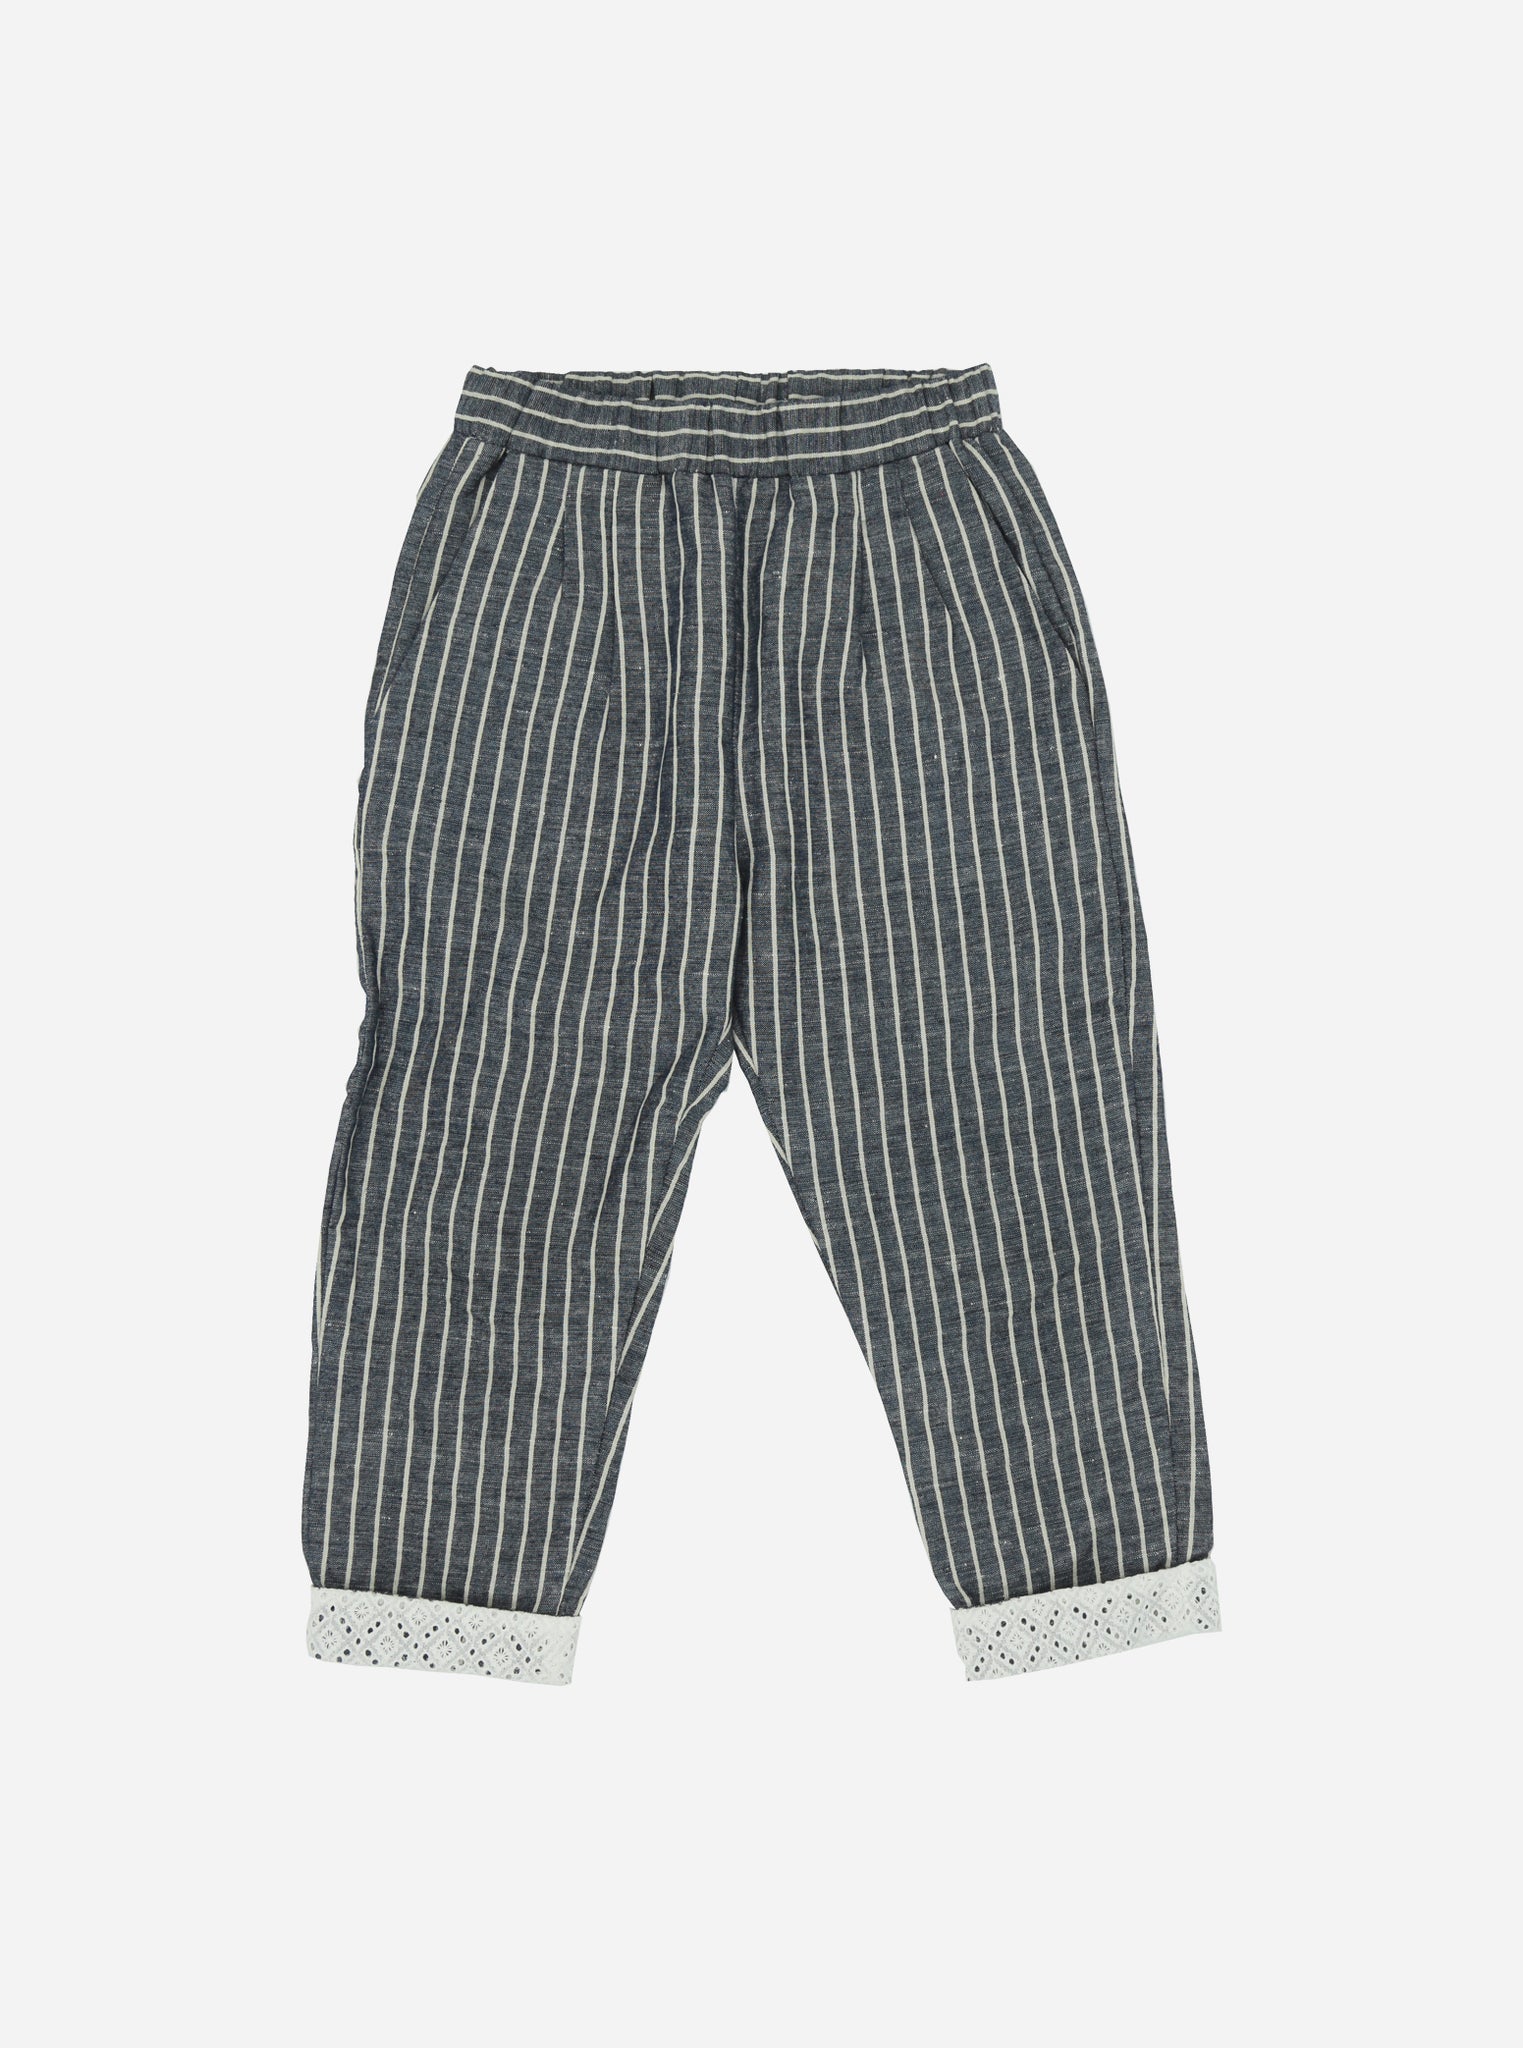 Pantalone rigato ARIANNA con dettagli in sangallo-OUTLET Pantaloni e Shorts-I Leoncini Shop